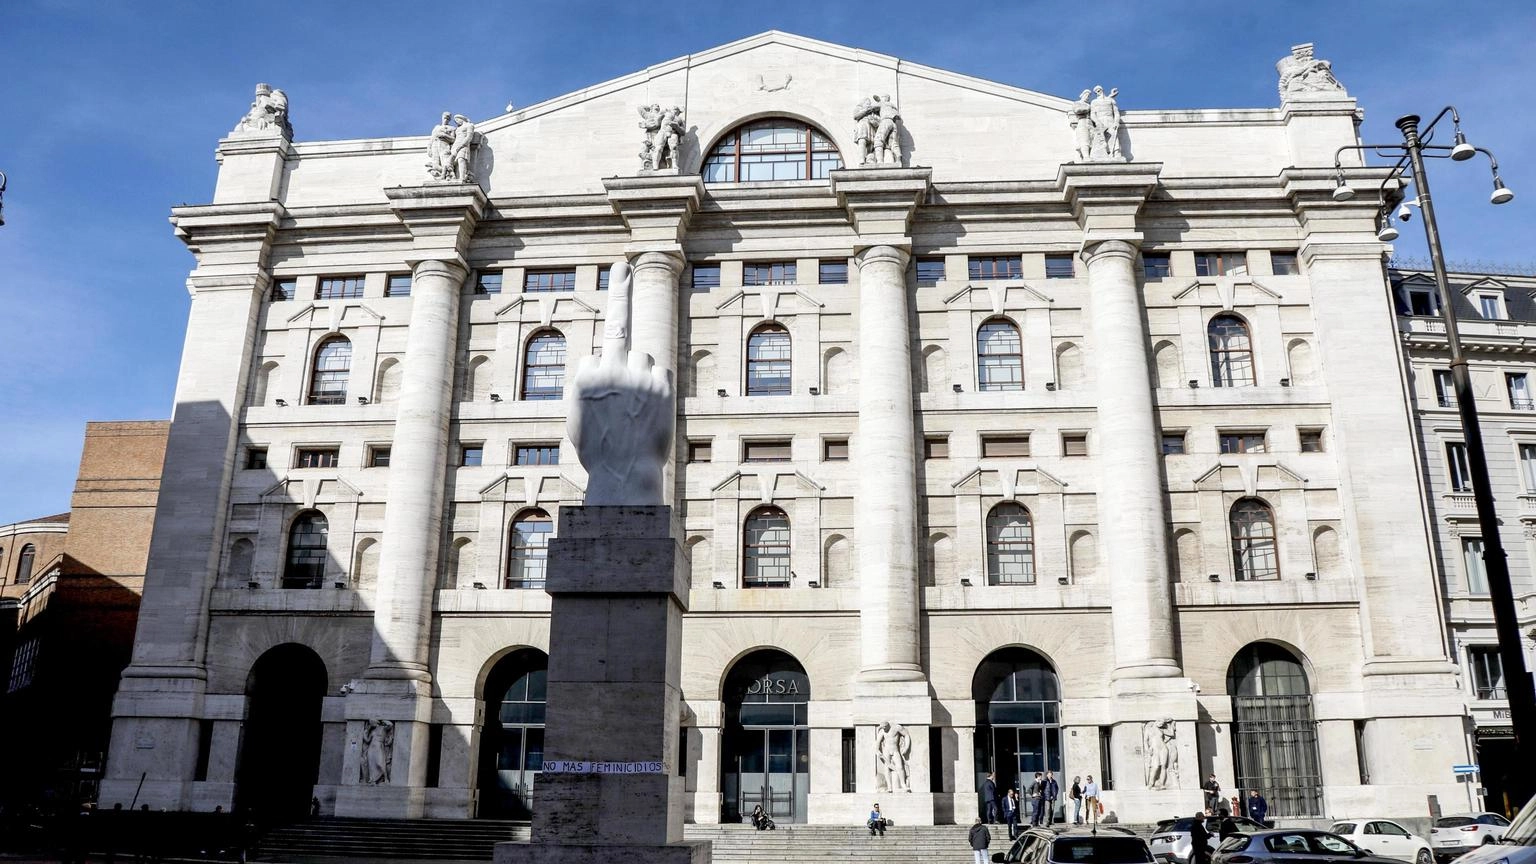 Borsa: Milano (-0,3%) resta incerta dopo l'avvio di Wall street